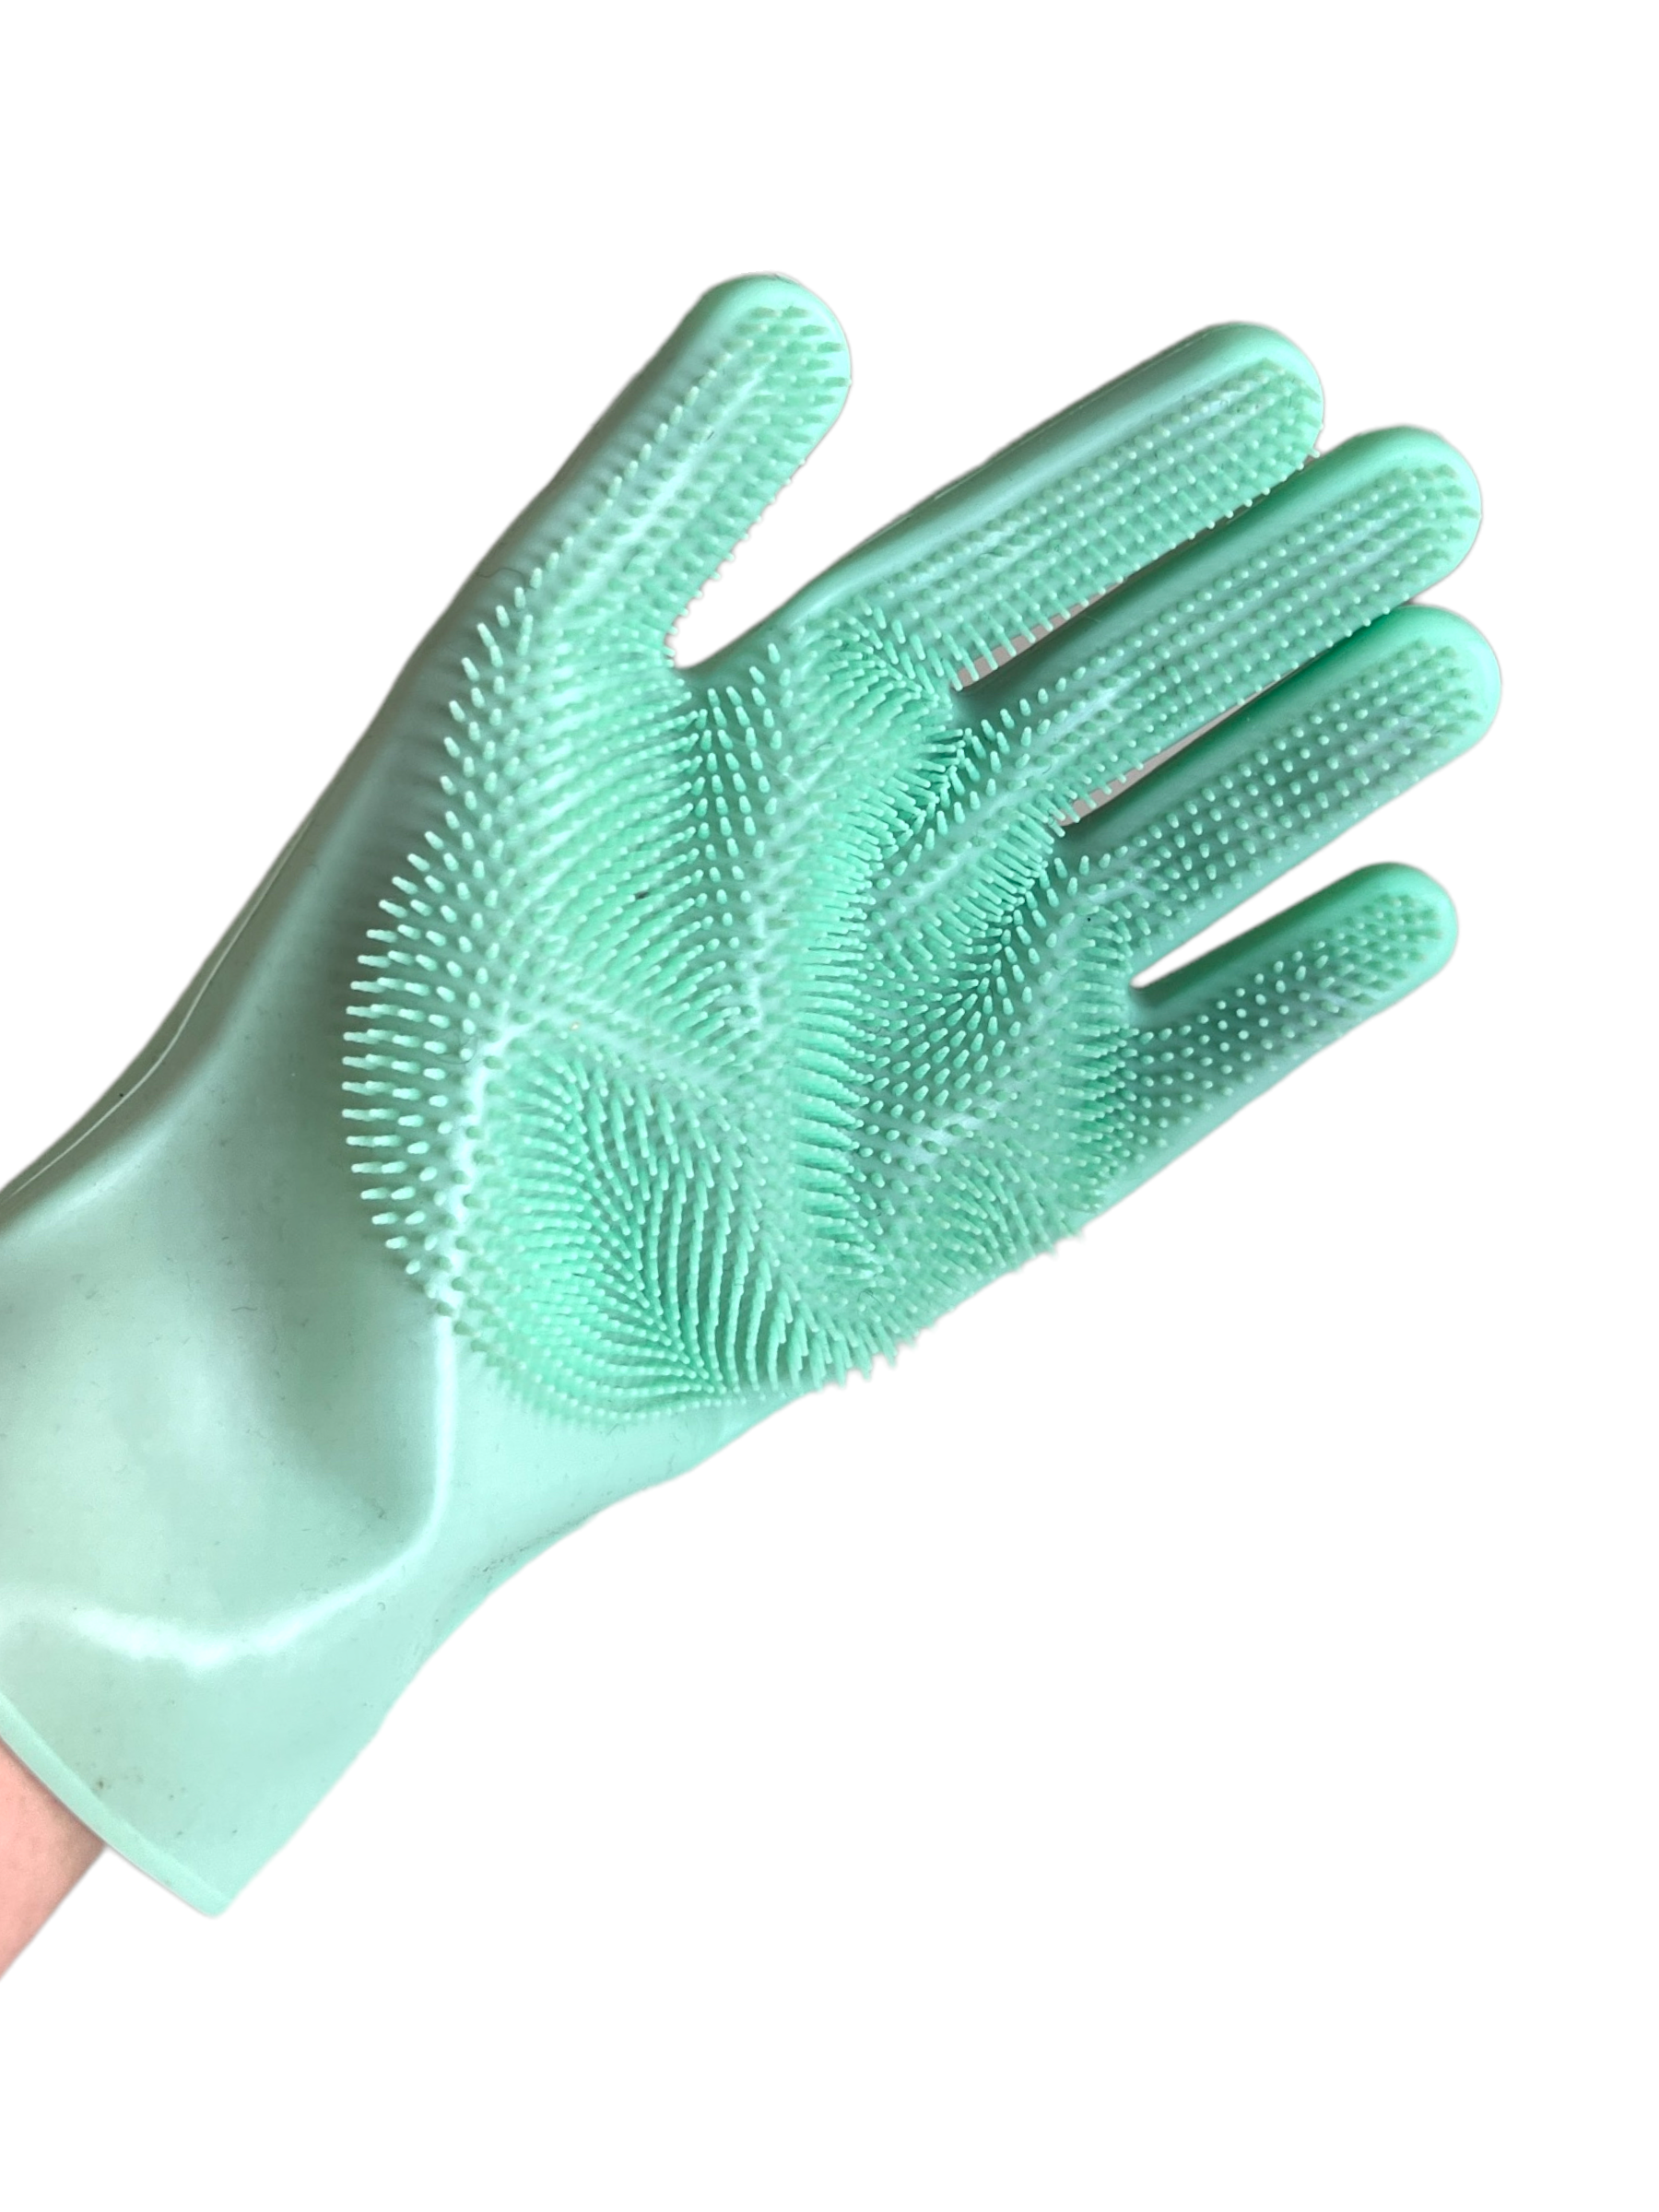 Dish Washing Scrubber Gloves  SPIRIT SPARKPLUGS   